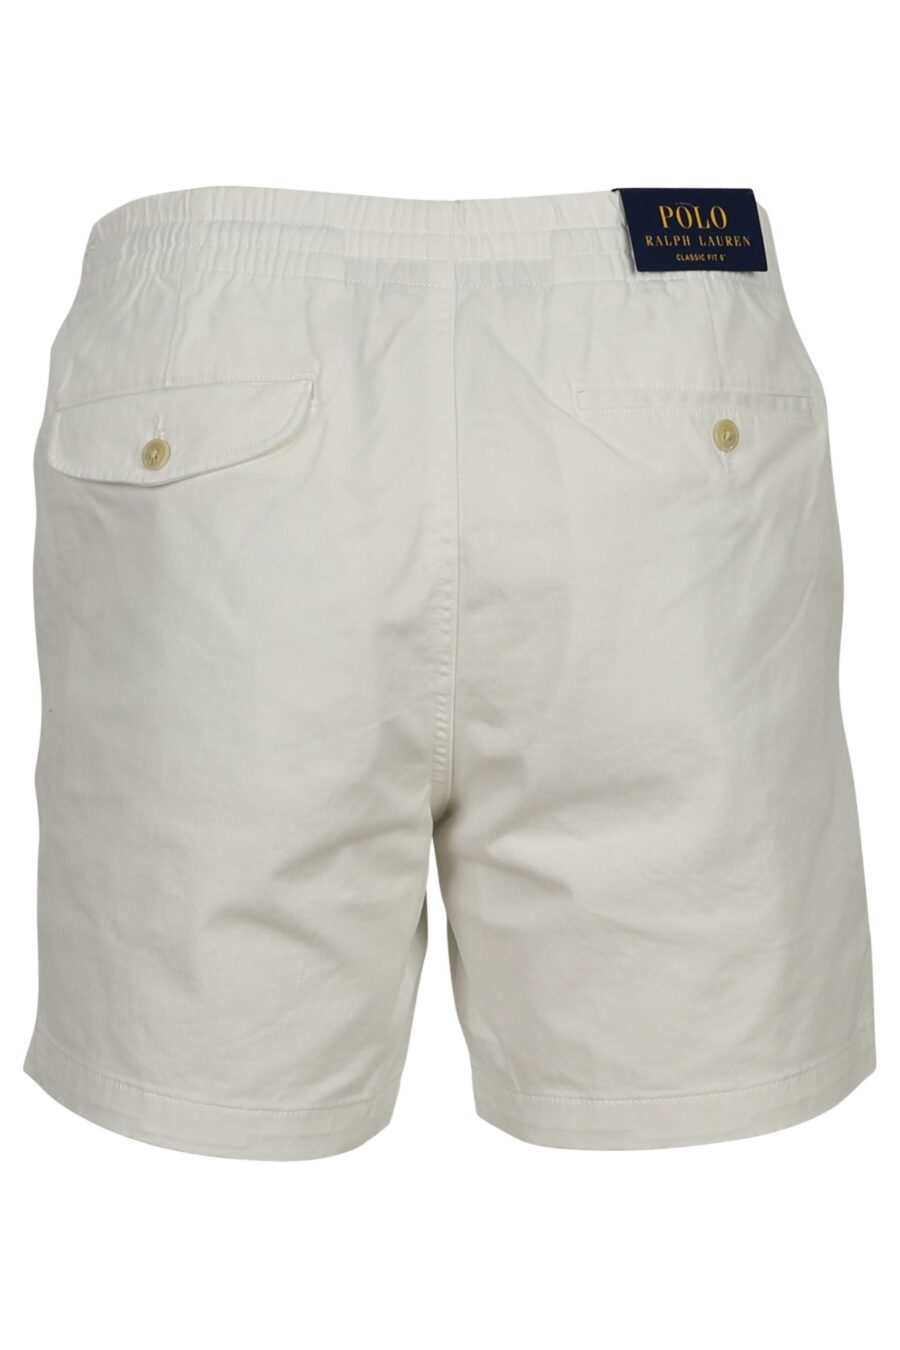 Pantalón blanco corto con minilogo "polo" - 3614712774080 1